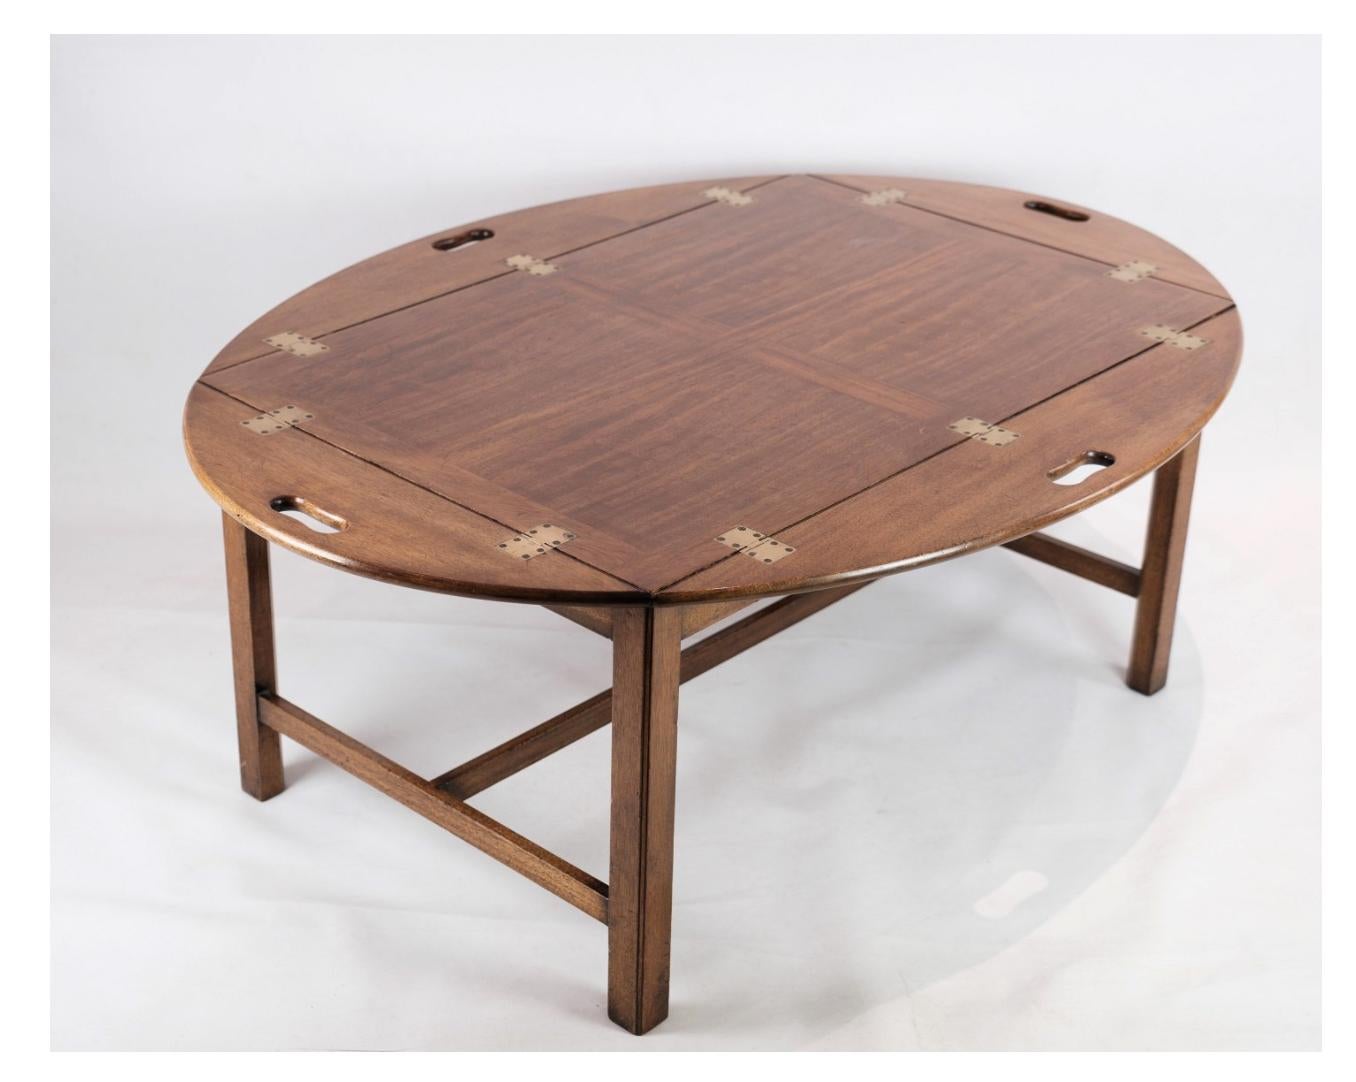 Der aus Mahagoni gefertigte Butler-Tisch aus den 1950er Jahren bietet Eleganz und Funktionalität zugleich.

Dieser Tisch aus Mahagoni, das für seine satten Farbtöne und seine Langlebigkeit bekannt ist, strahlt eine zeitlose Raffinesse aus, die zu